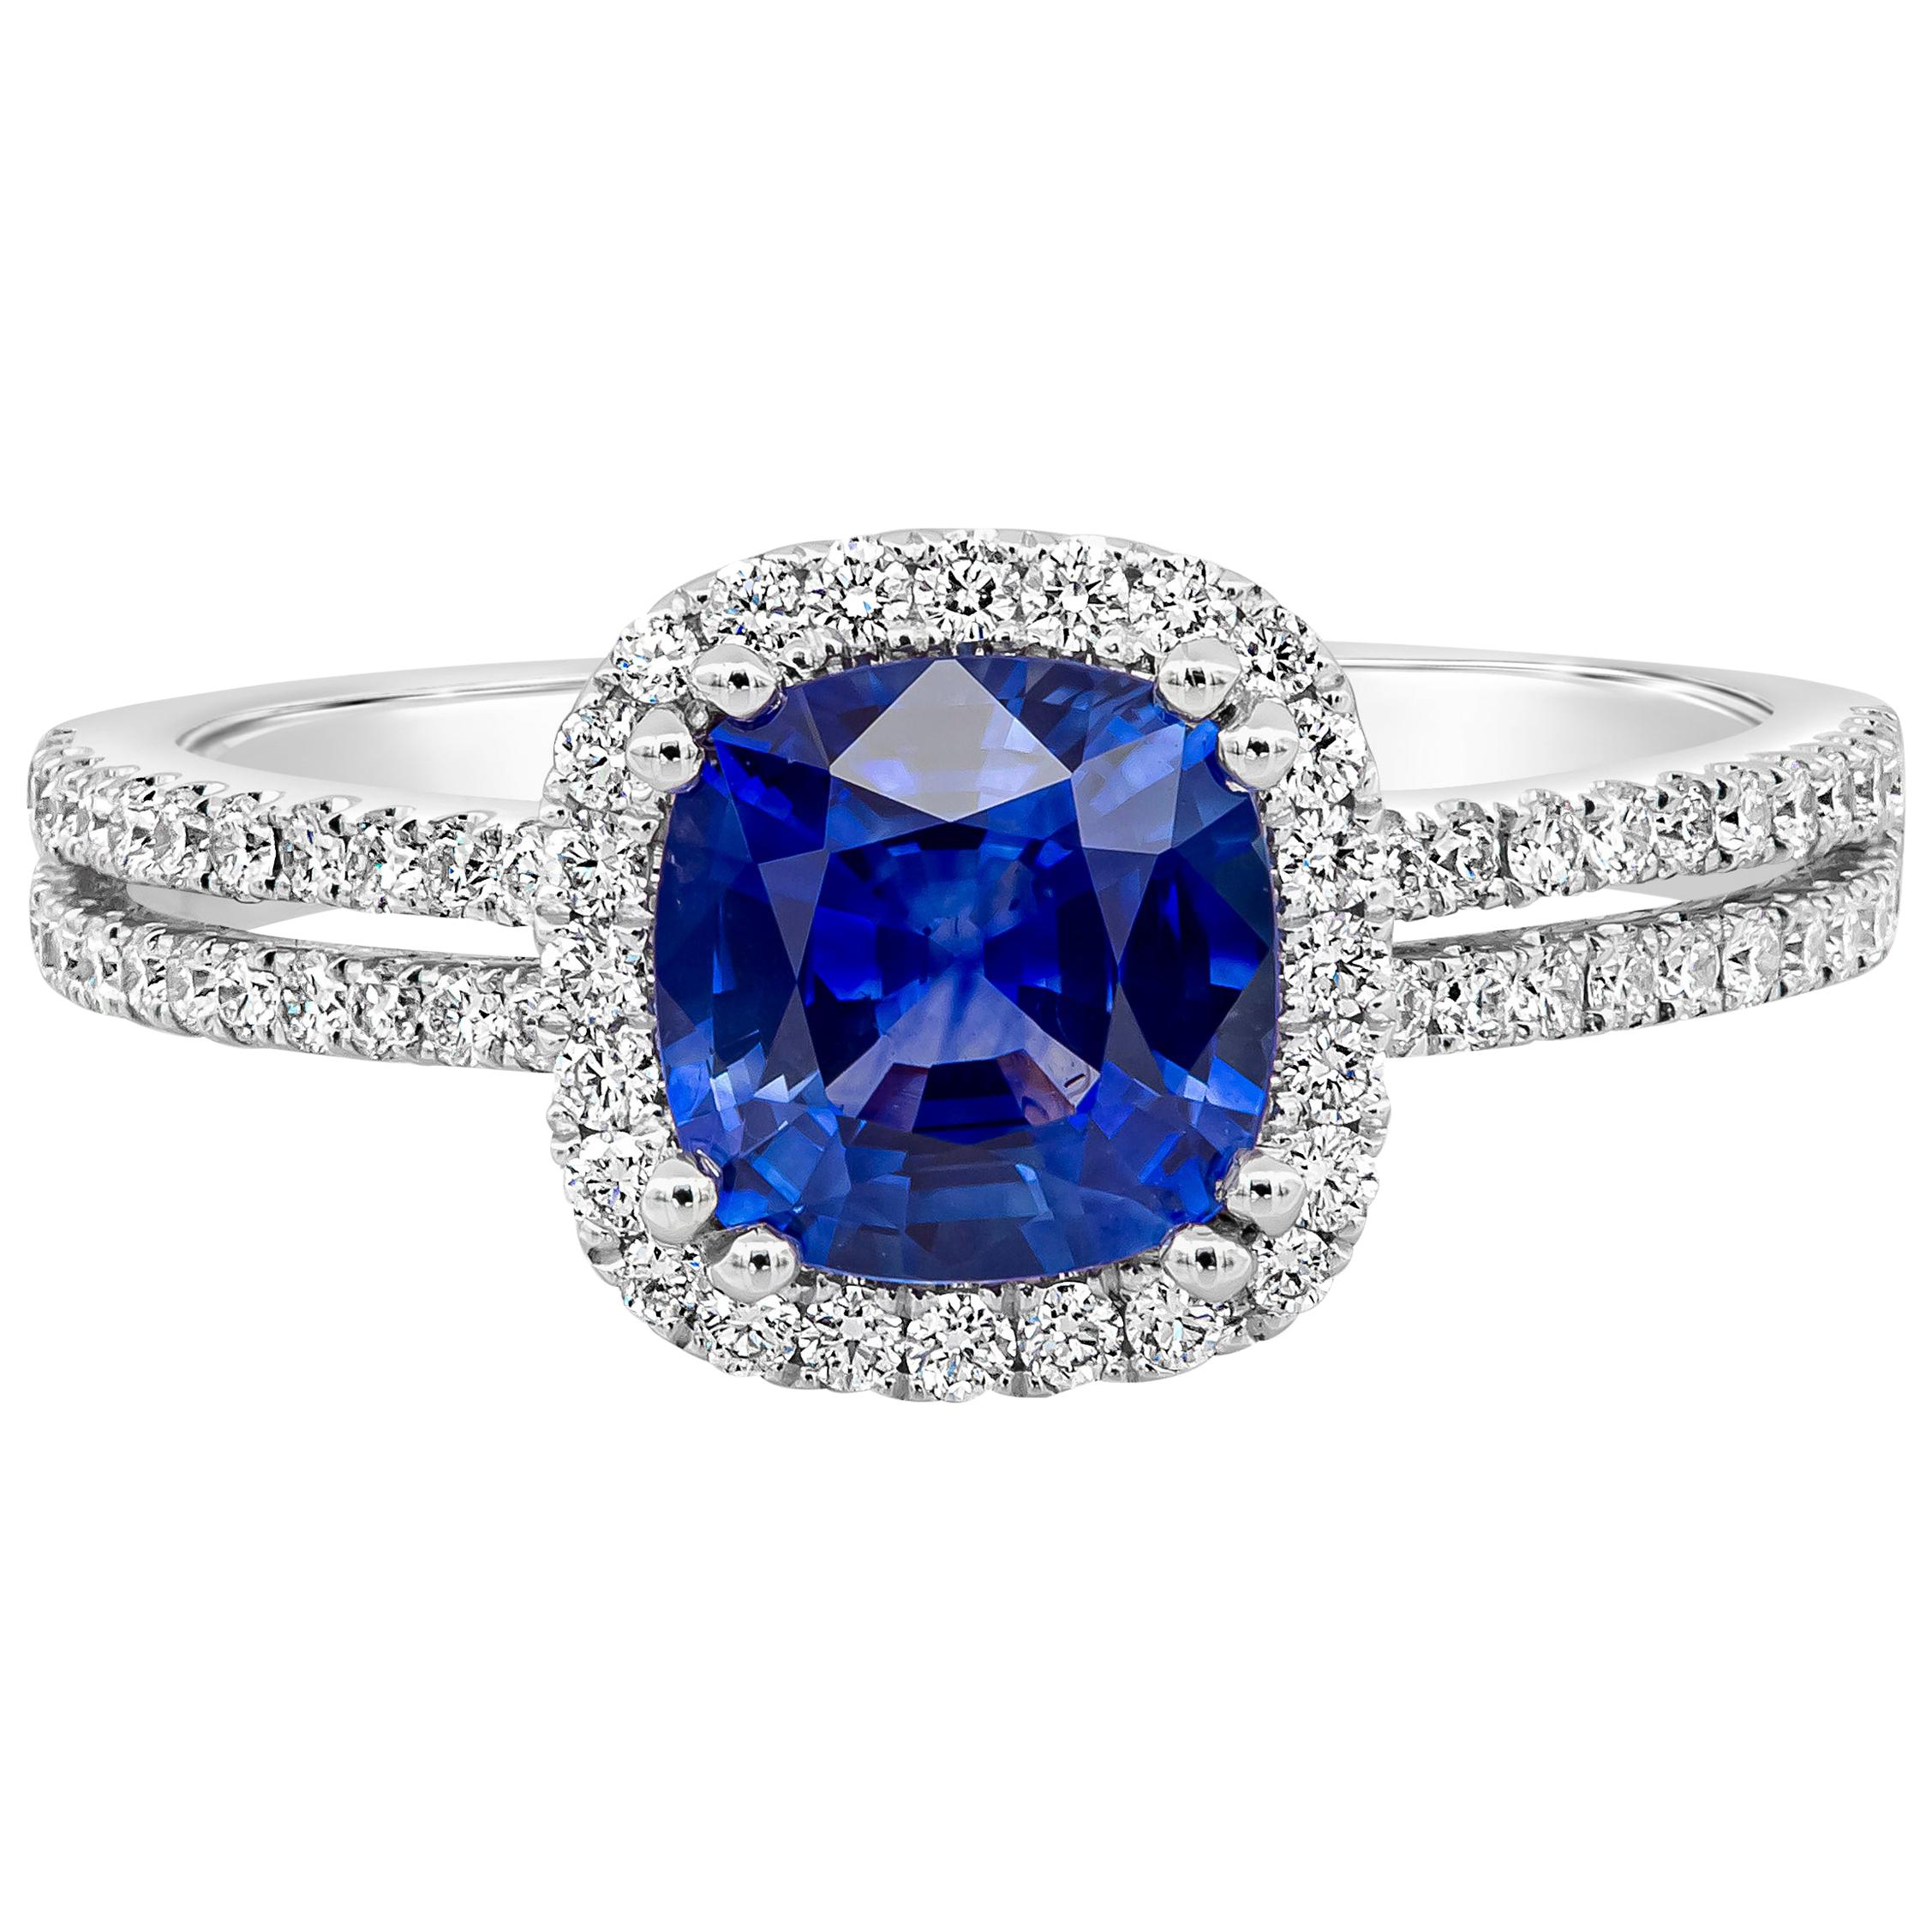 Römischer Malakov Verlobungsring mit blauem Saphir im Kissenschliff und Diamant-Halo